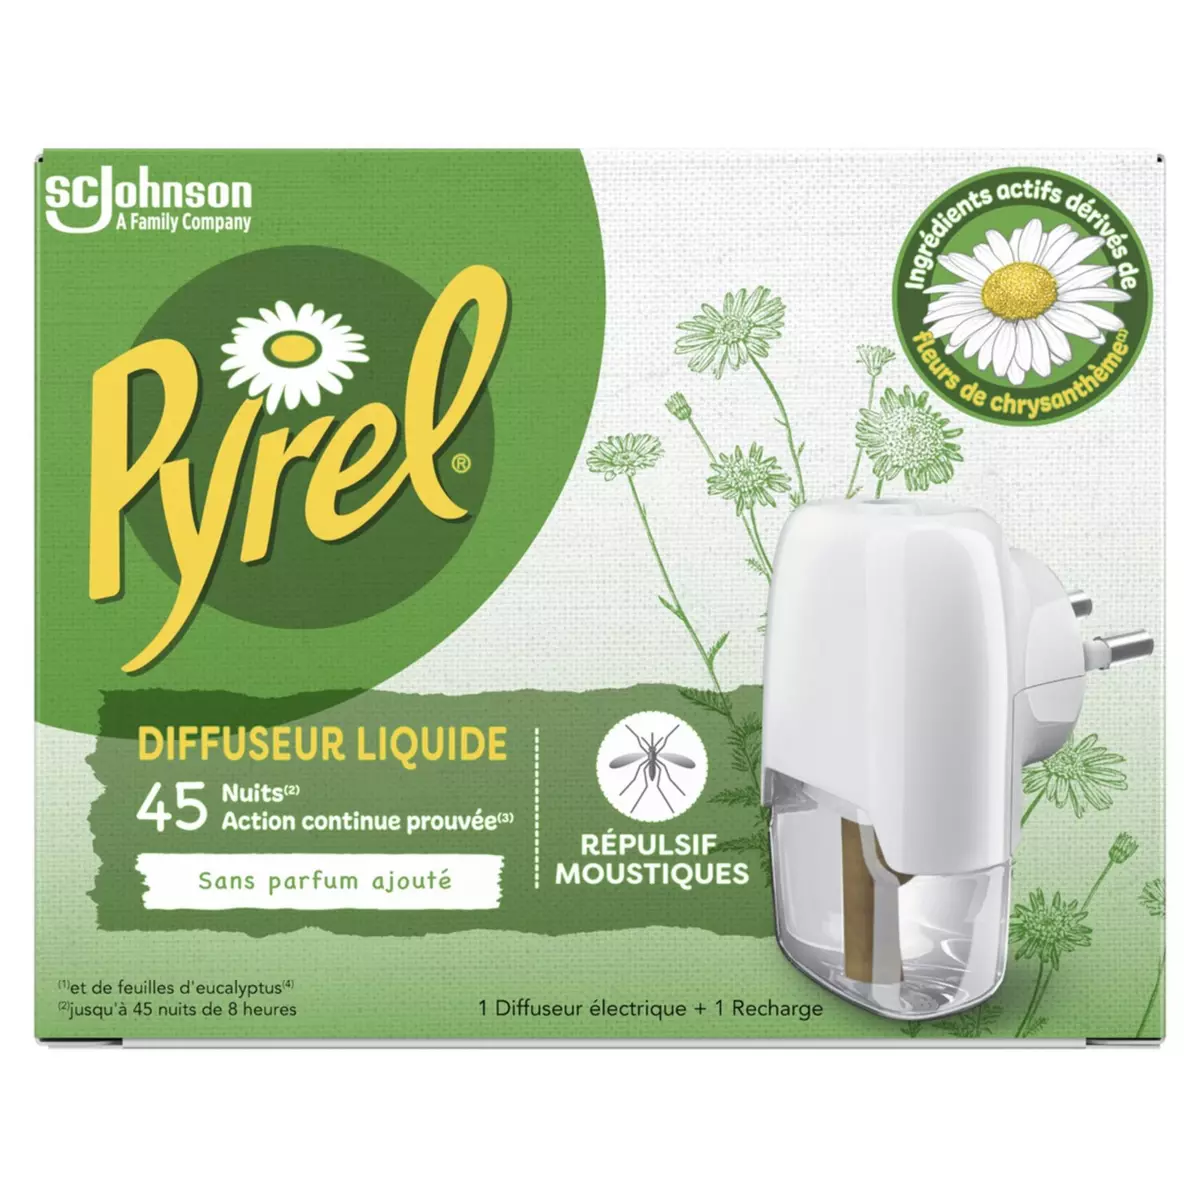 PYREL Diffuseur électrique liquide répulsif moustiques 1 diffuseur + 1 recharge